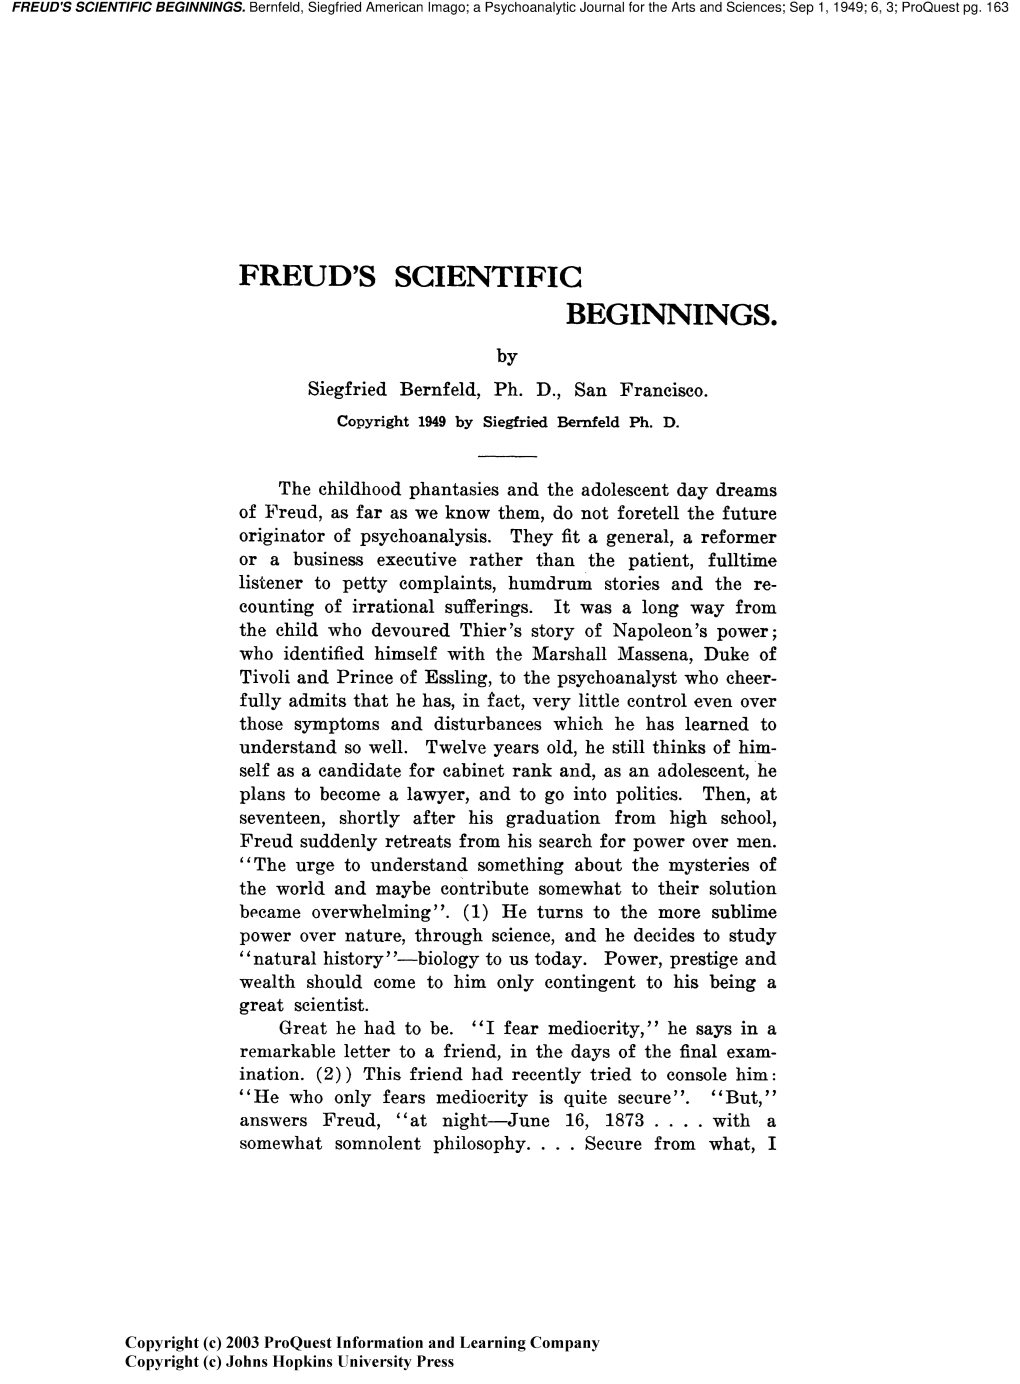 Freud's Scientific Beginnings